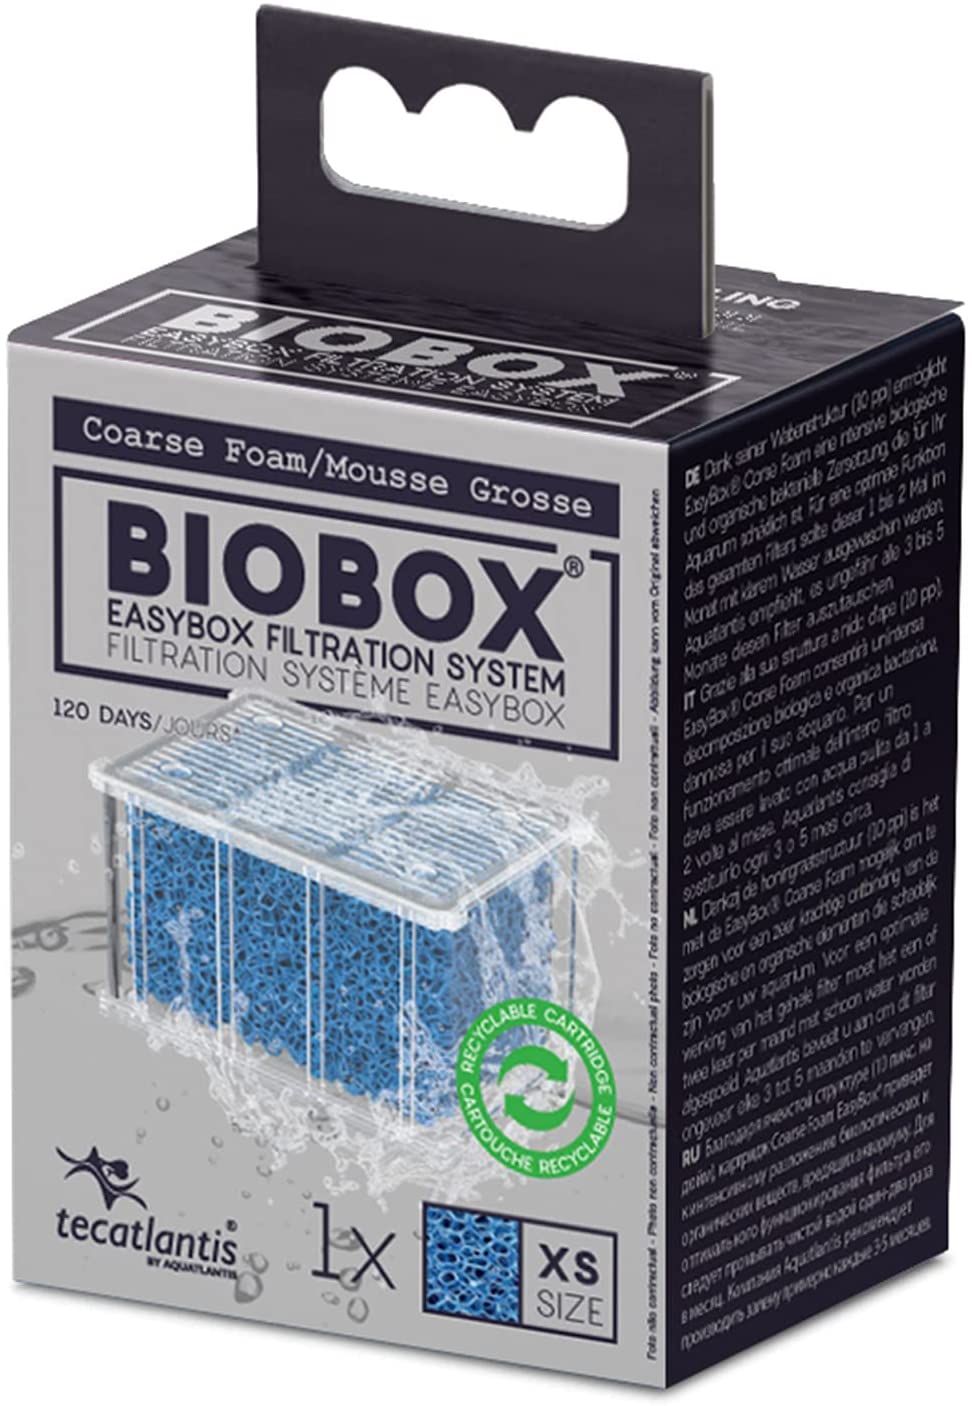 Tecatlantis Easybox - Cartuccia filtrante in Schiuma Grossa per filtri Mini Biobox 1 e 2/Biobox 0, XS